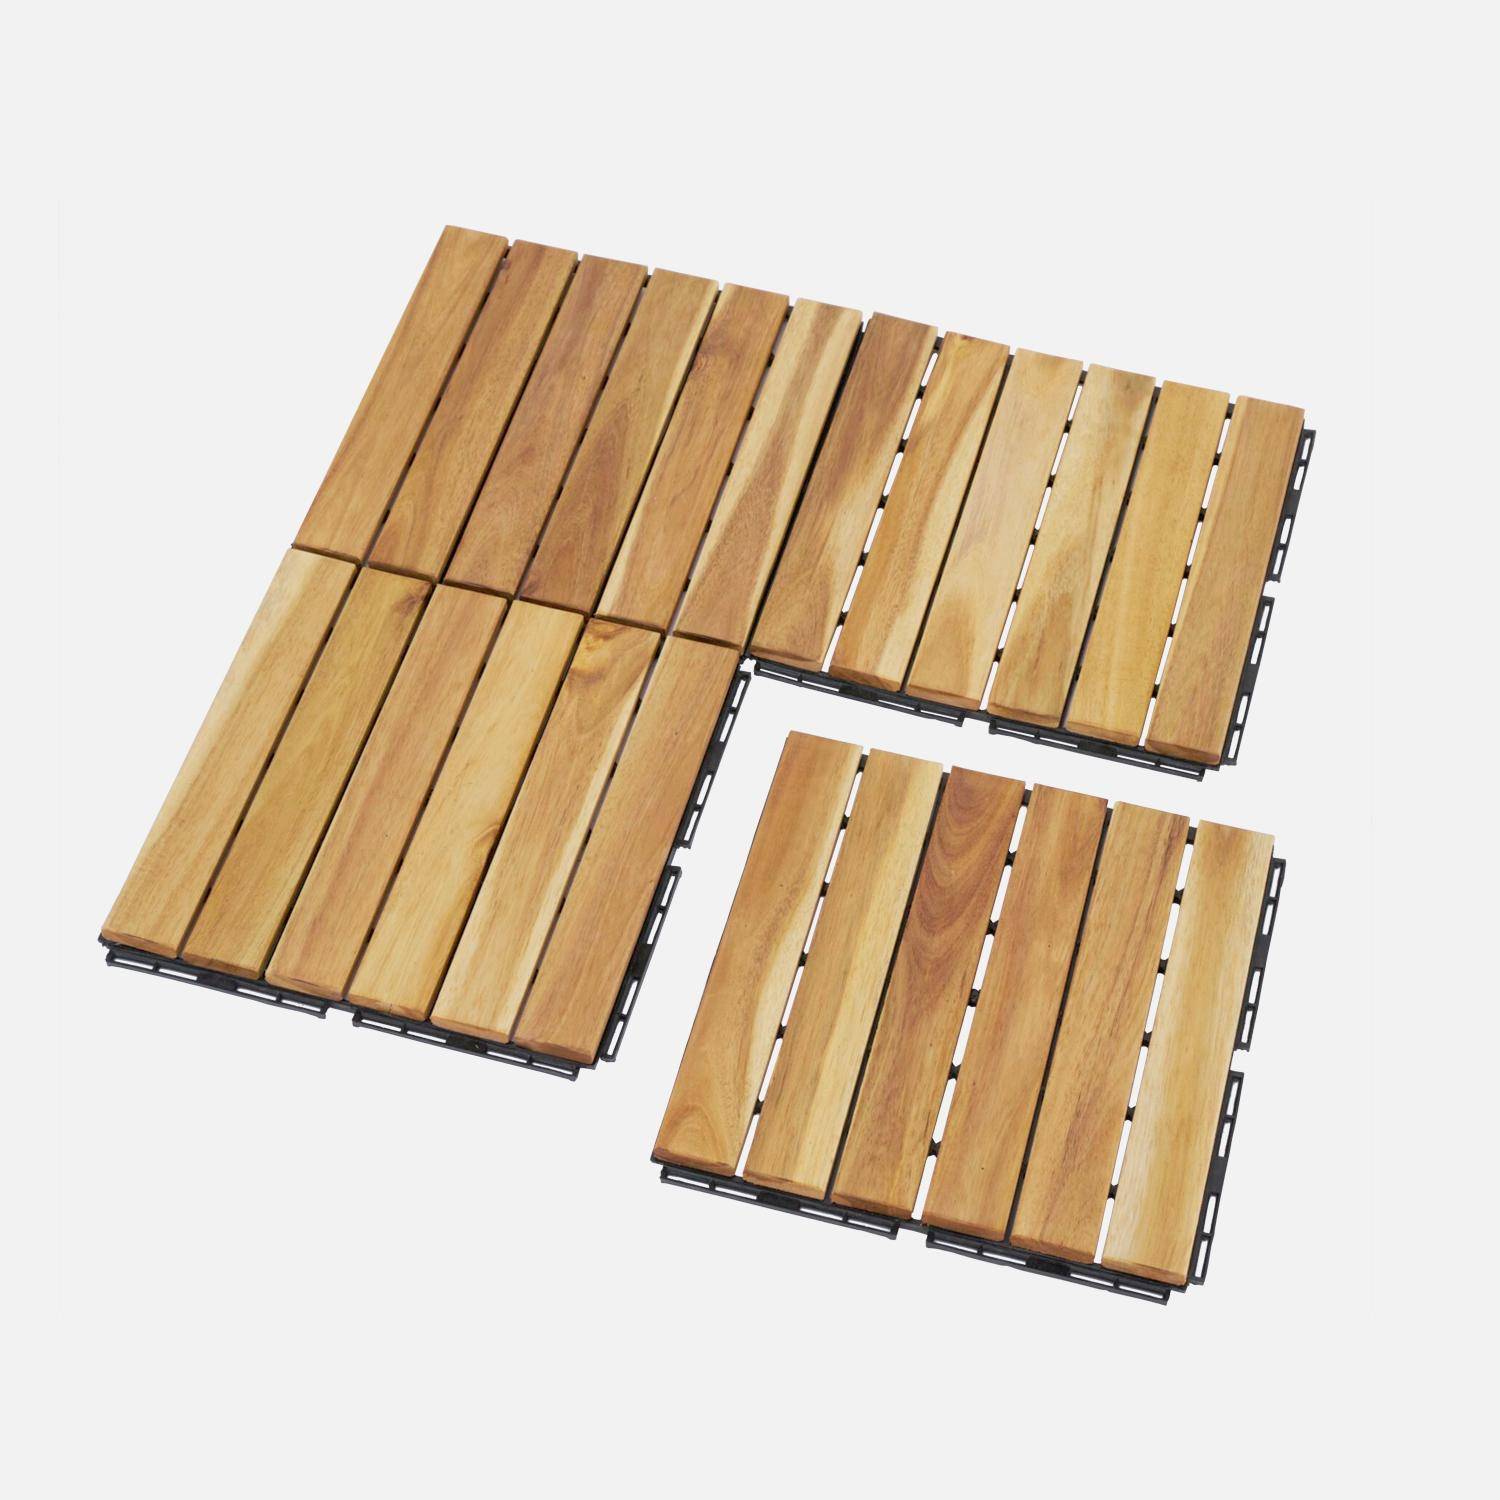 Lote de 36 ladrilhos para decks de madeira de acácia 30x30cm, padrão linear, ripado, de encaixe Photo3